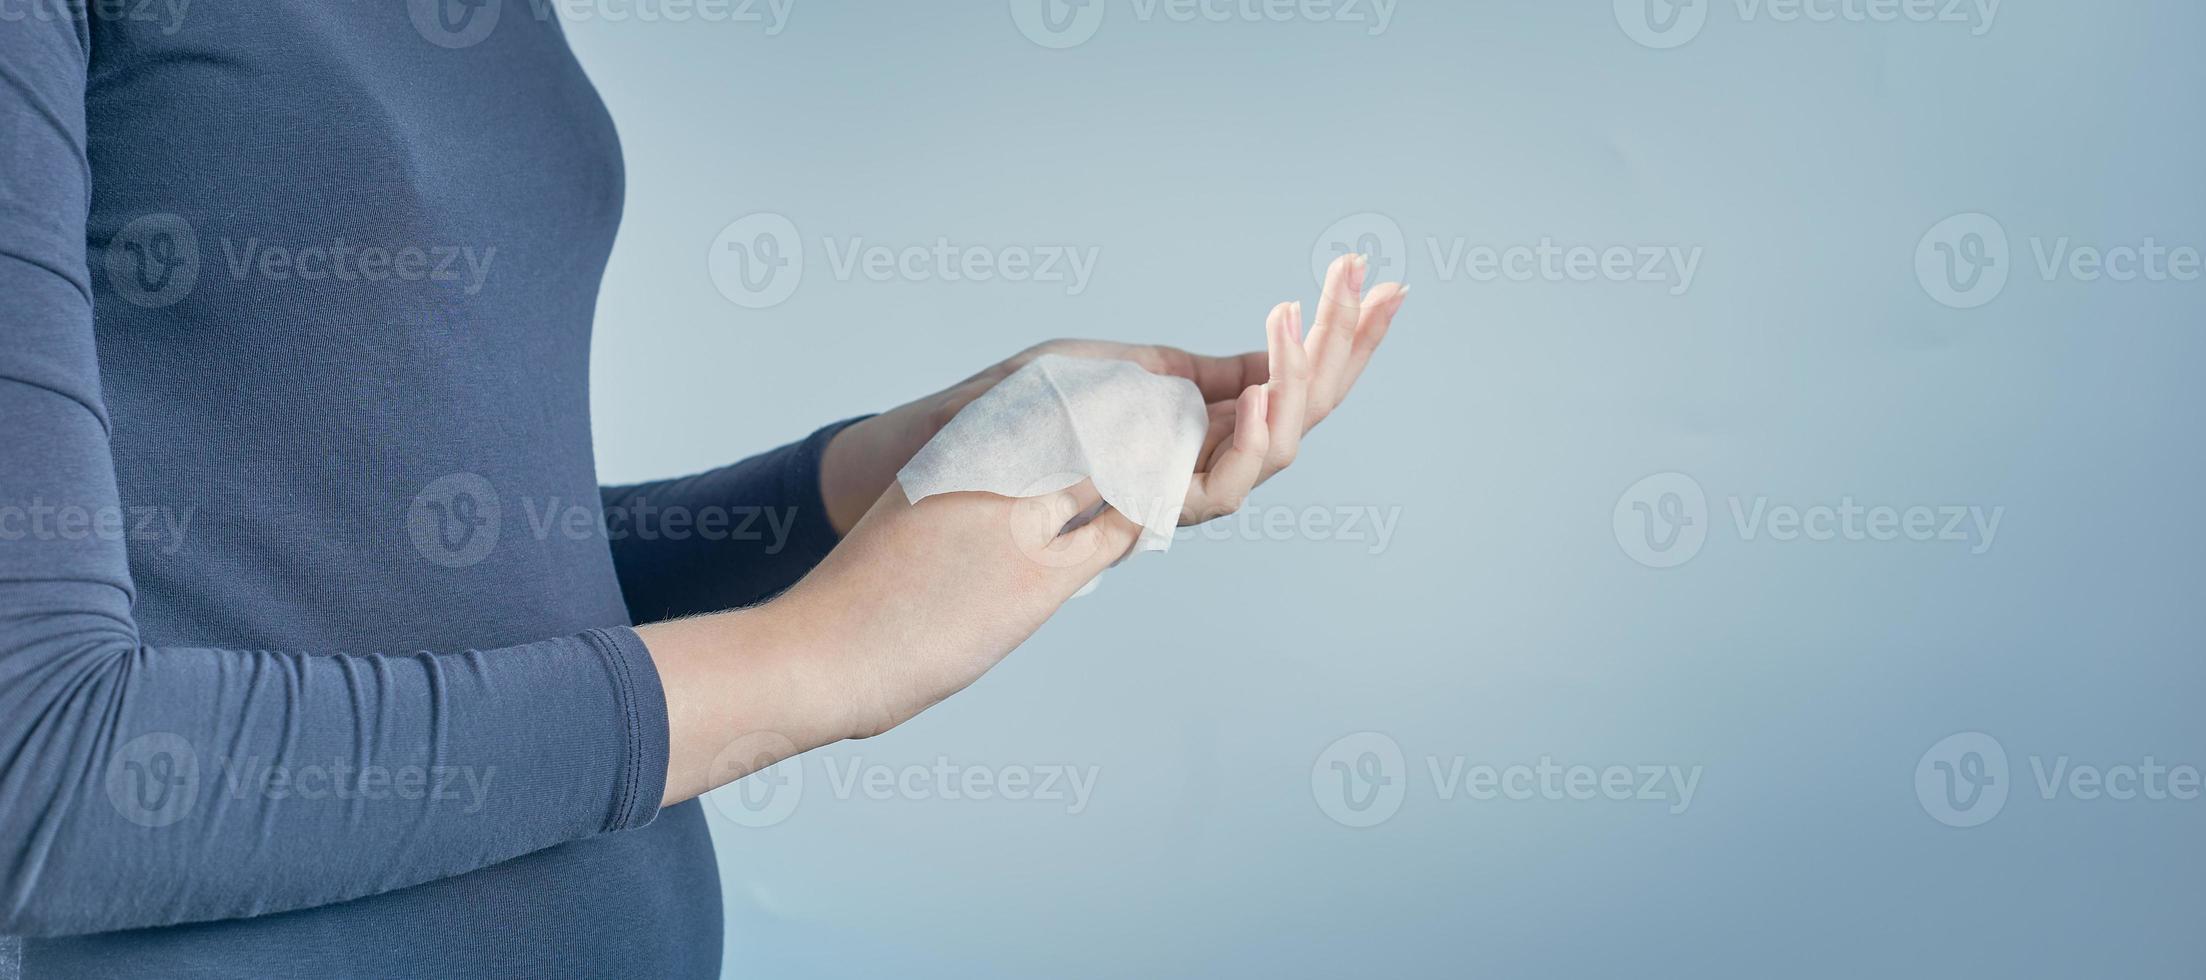 ragazza che si pulisce le mani usando un tovagliolo antibatterico bianco su sfondo grigio. foto con spazio di copia.